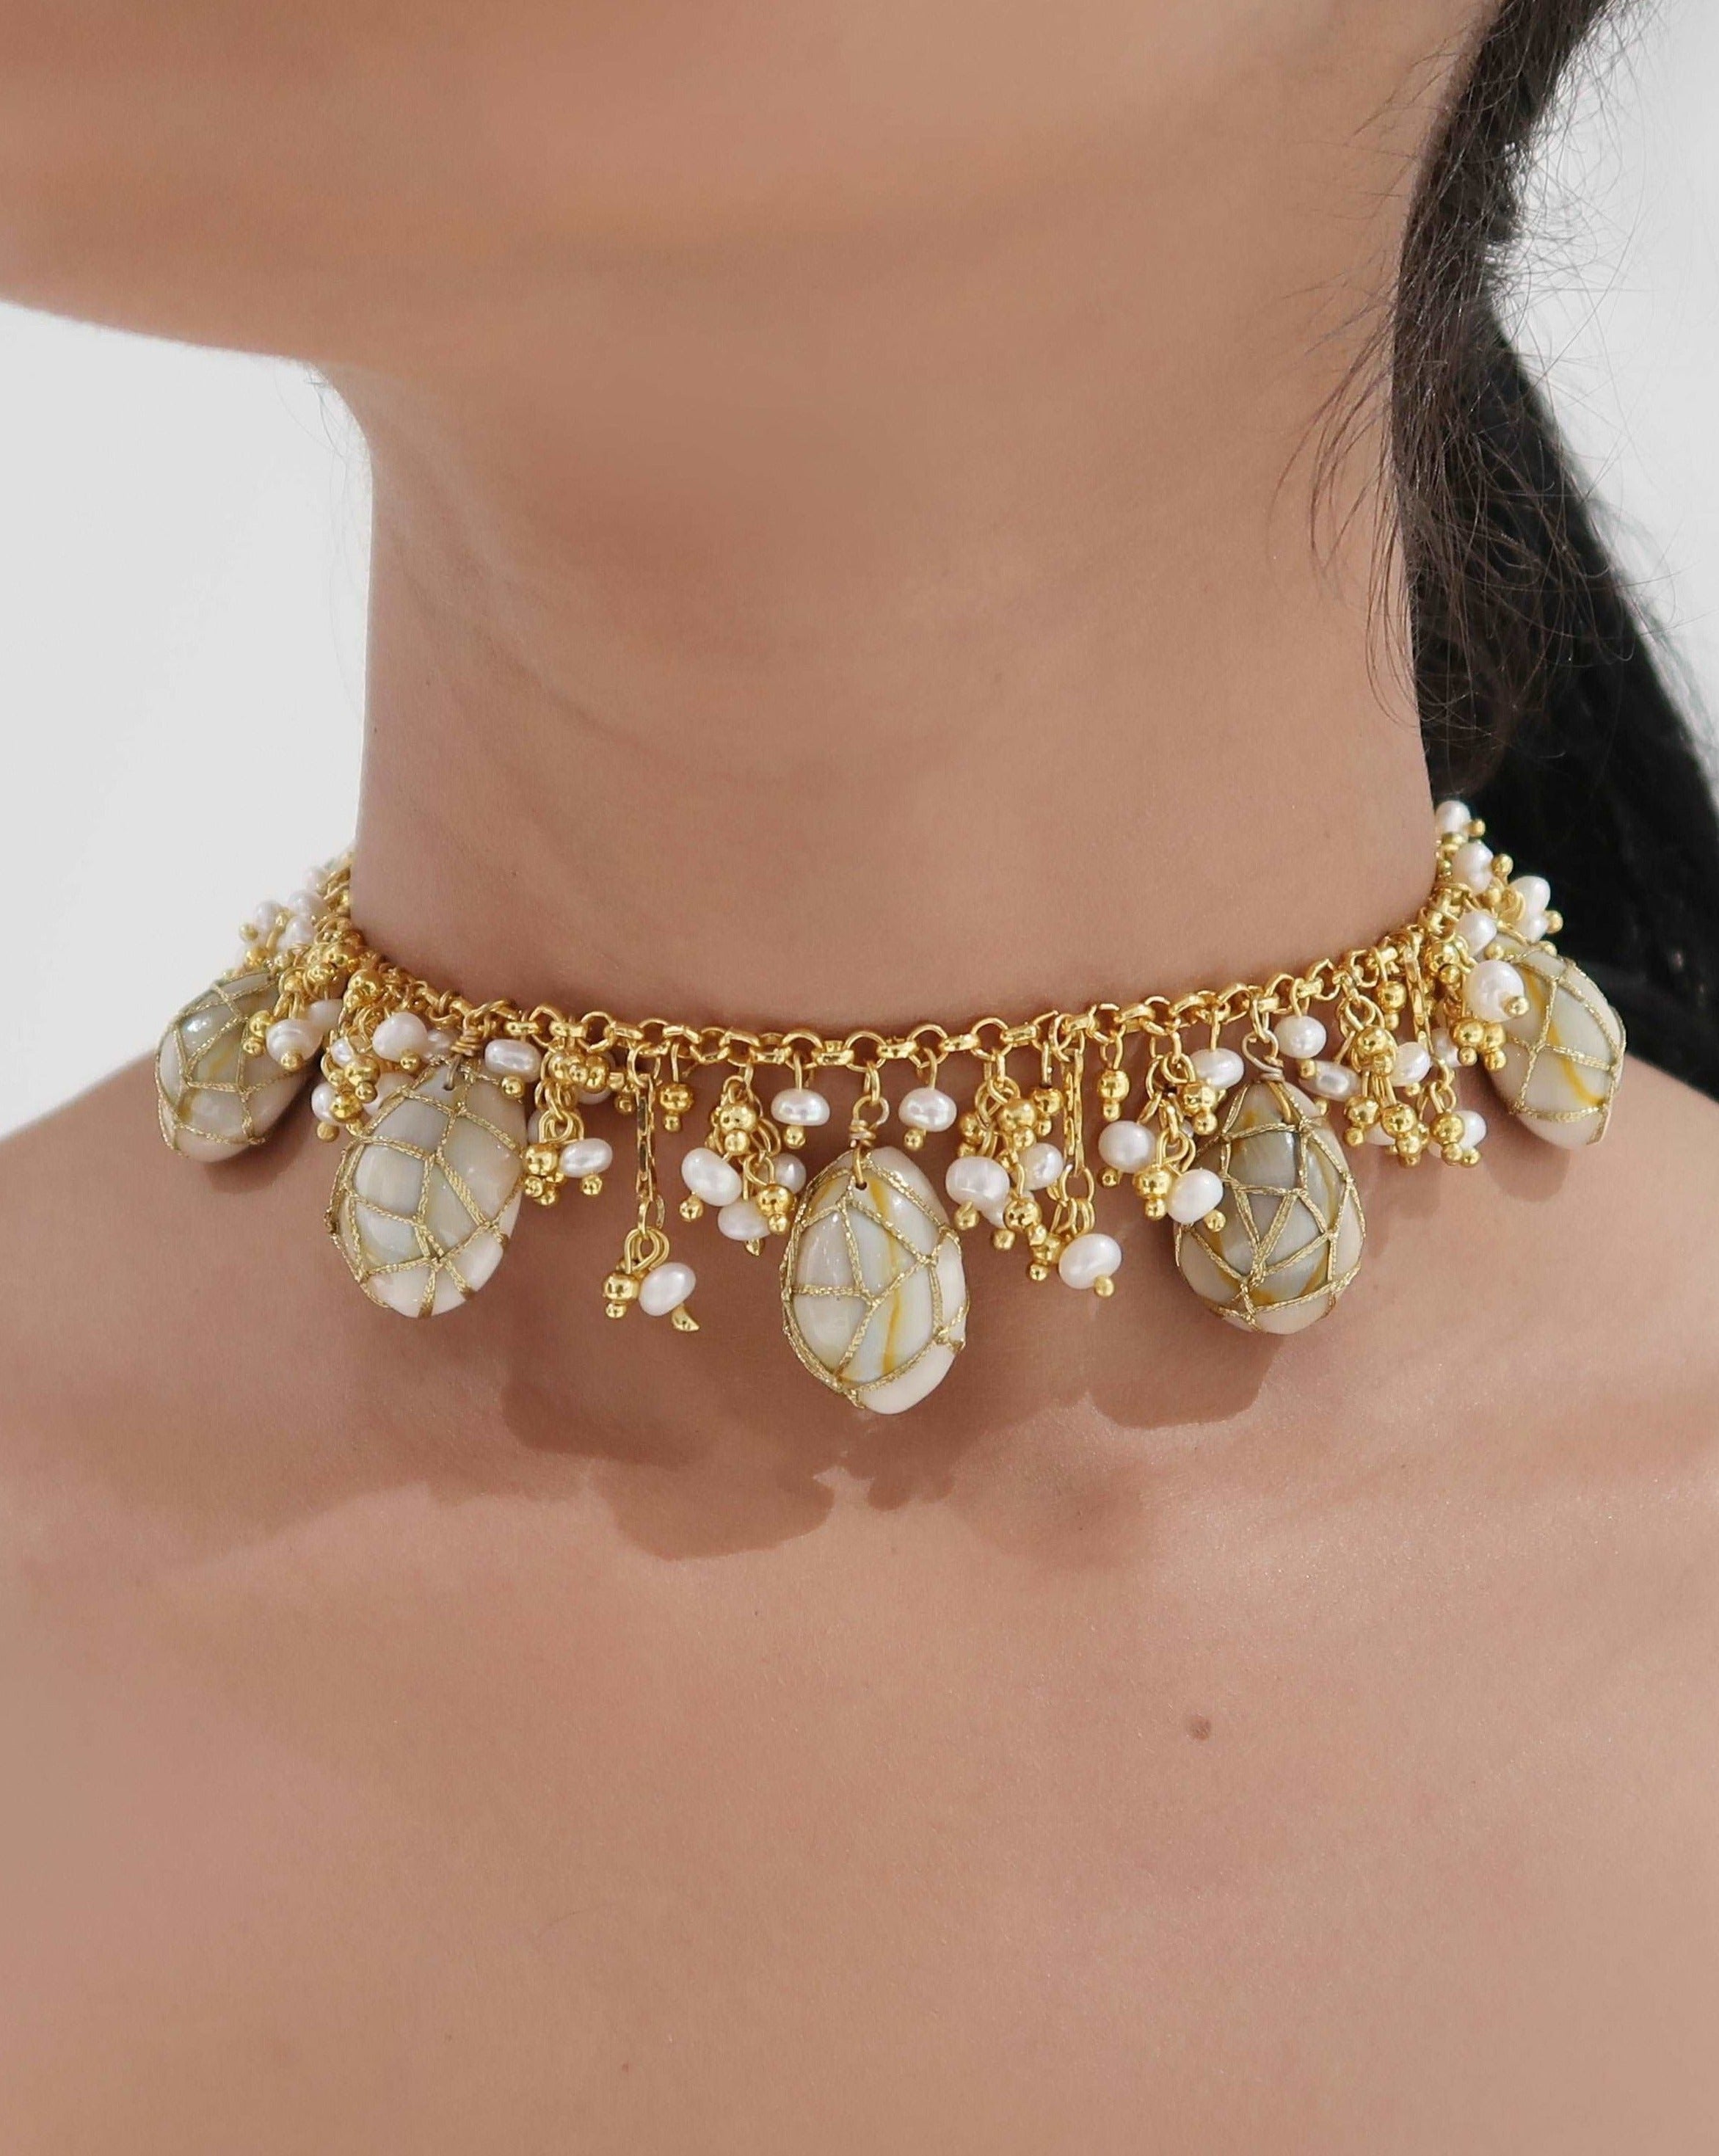 amama necklaces